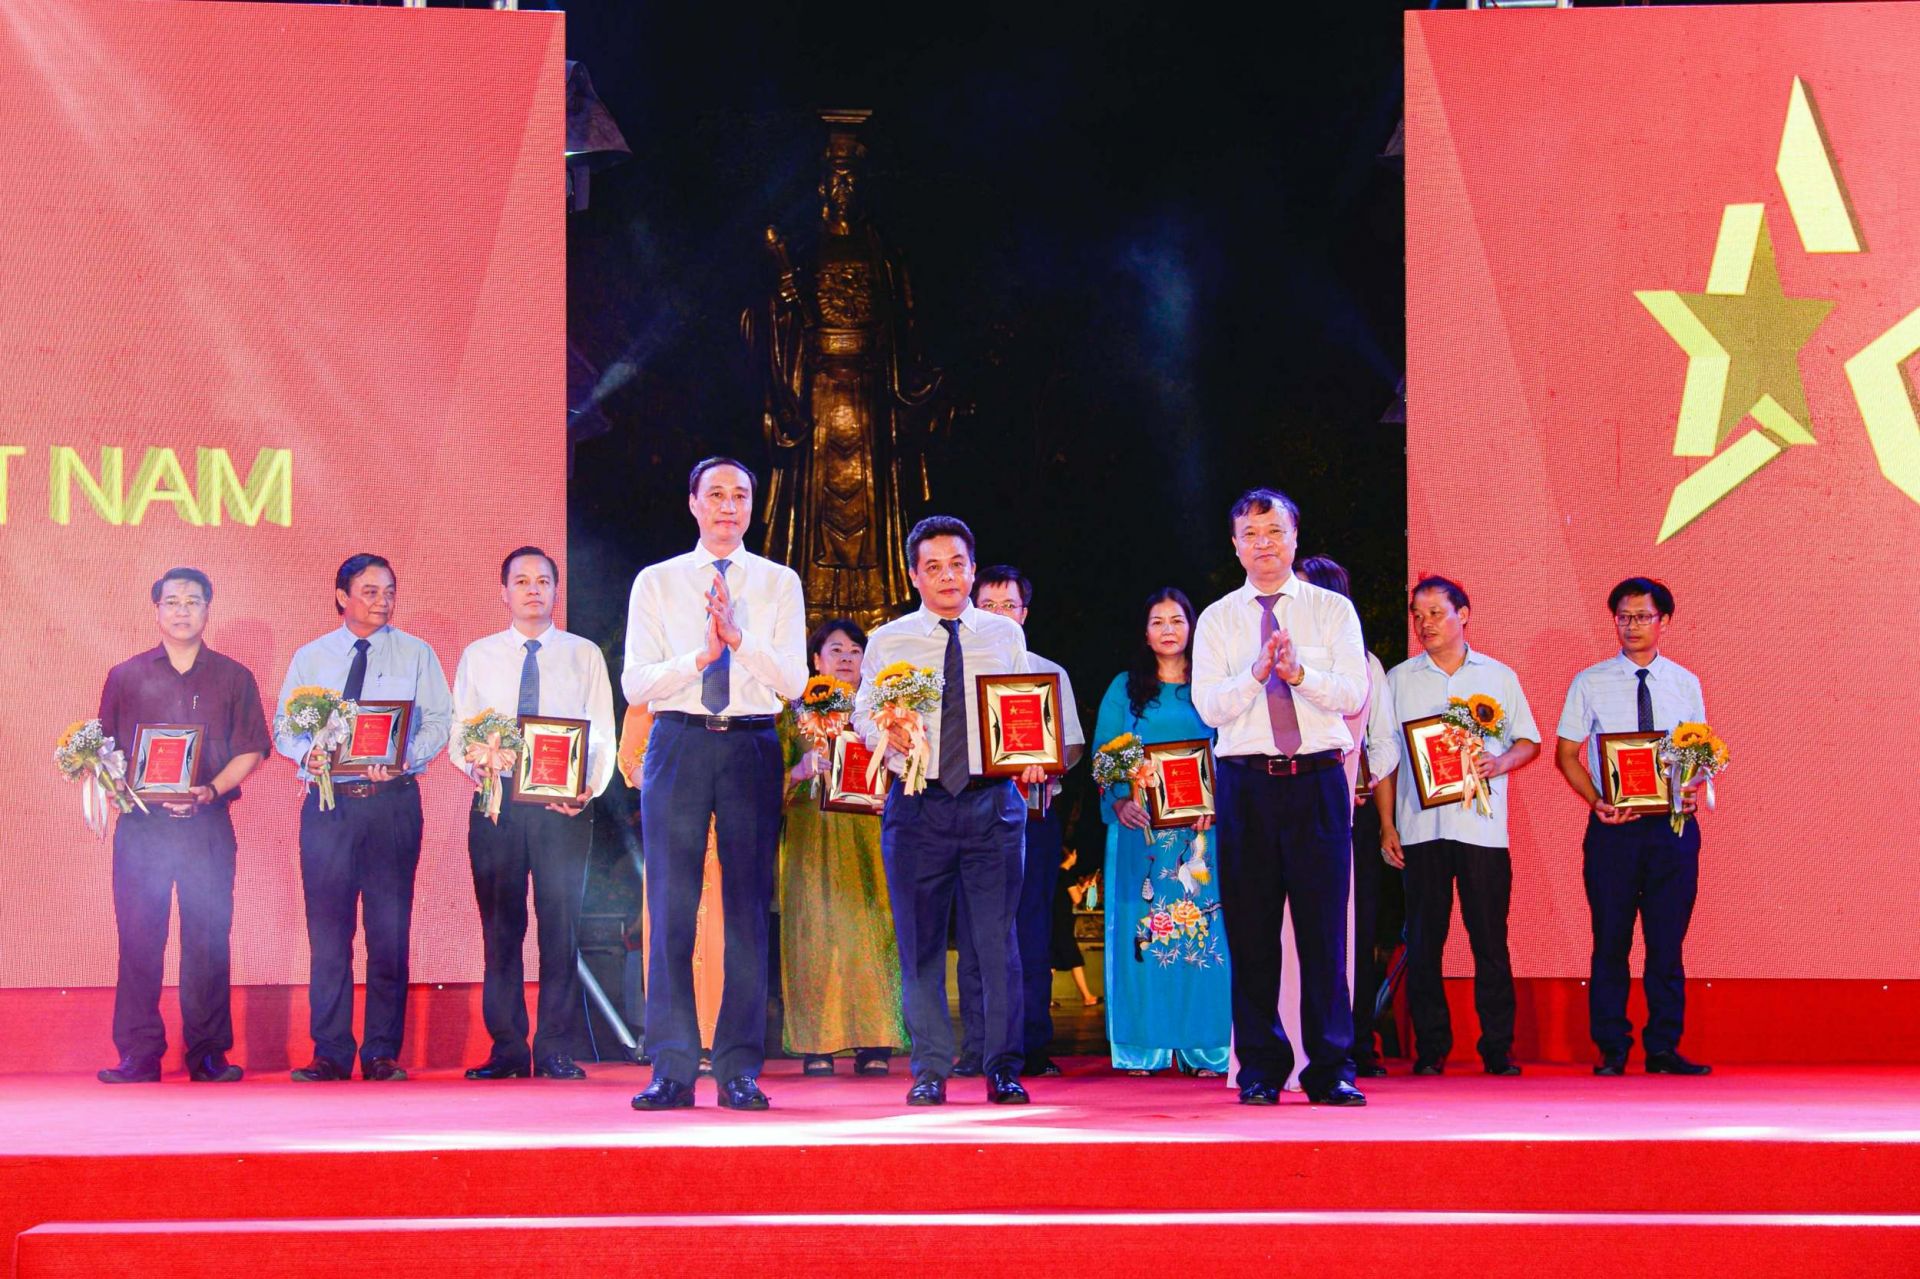 Phó Chủ tịch Ủy ban Trung ương Mặt trận Tổ quốc Việt Nam Phùng Khánh Tài (trái) và Thứ trưởng Bộ Công Thương Đỗ Thắng Hải (phải) trao kỷ niệm chương cho đại diện Tổng Công ty CP Bia - Rượu - Nước giải khát Hà Nội